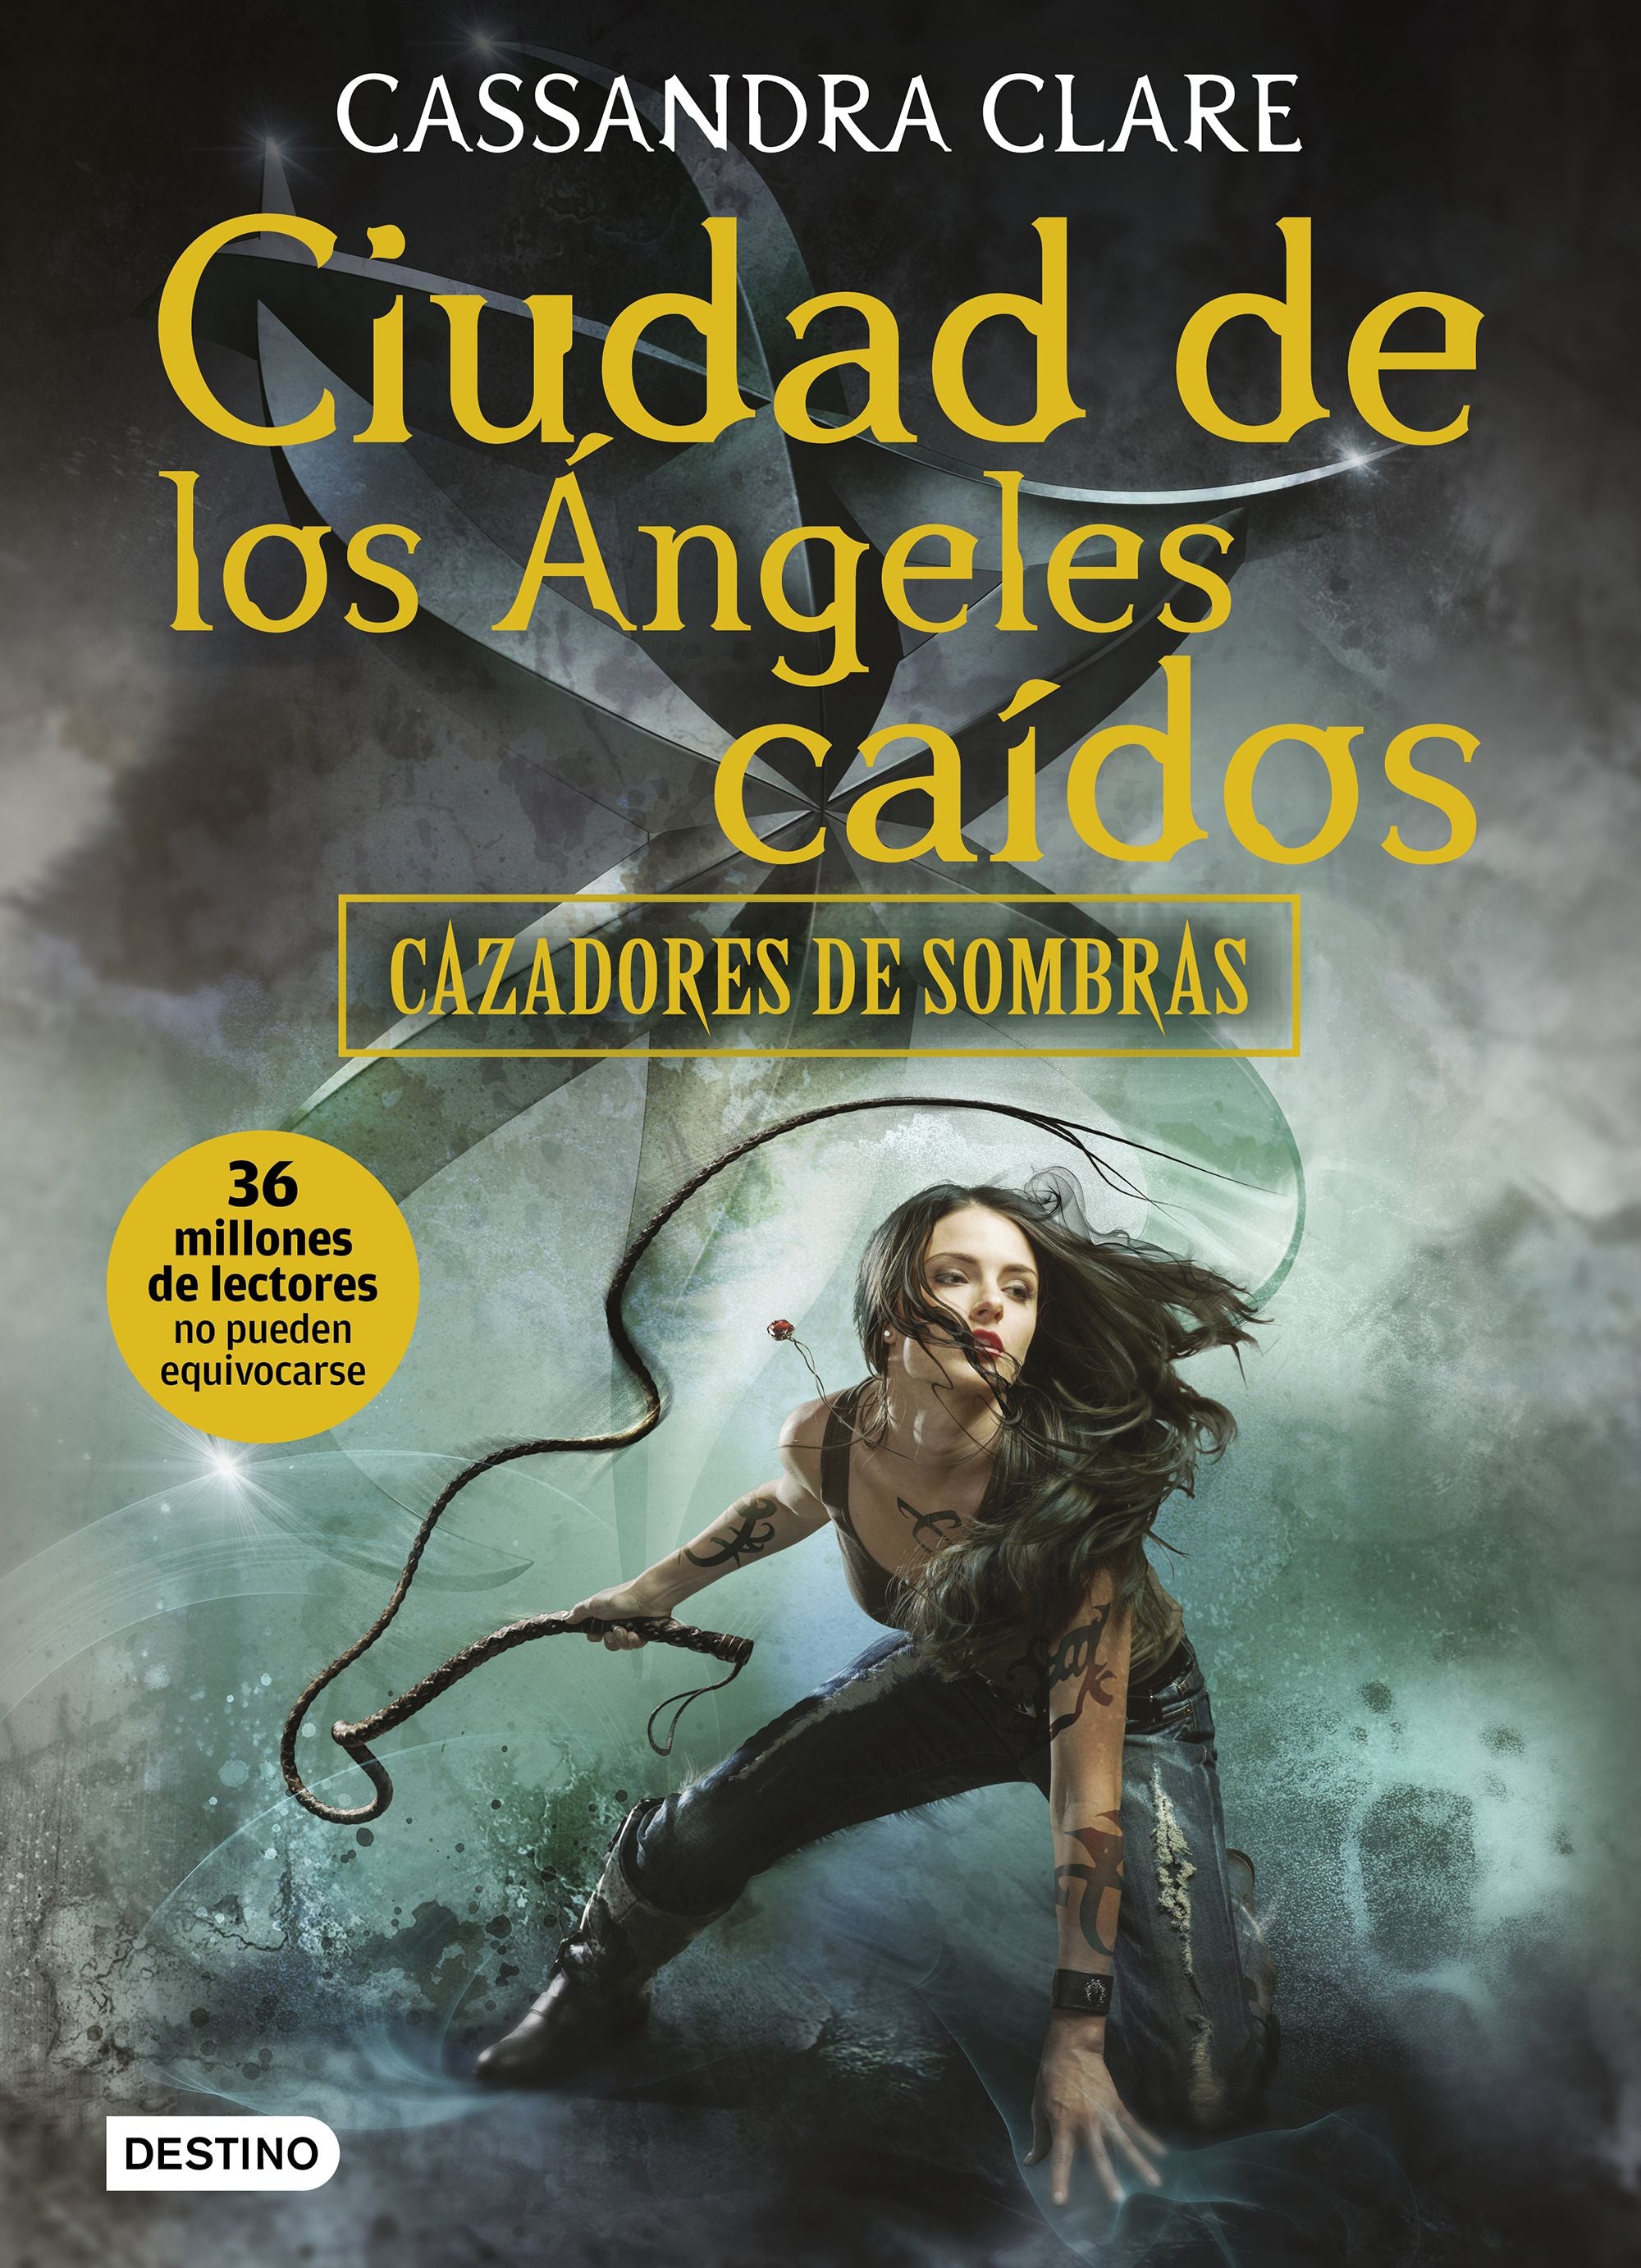 Libro Cassandra Clare - Ciudad de los ángeles caídos